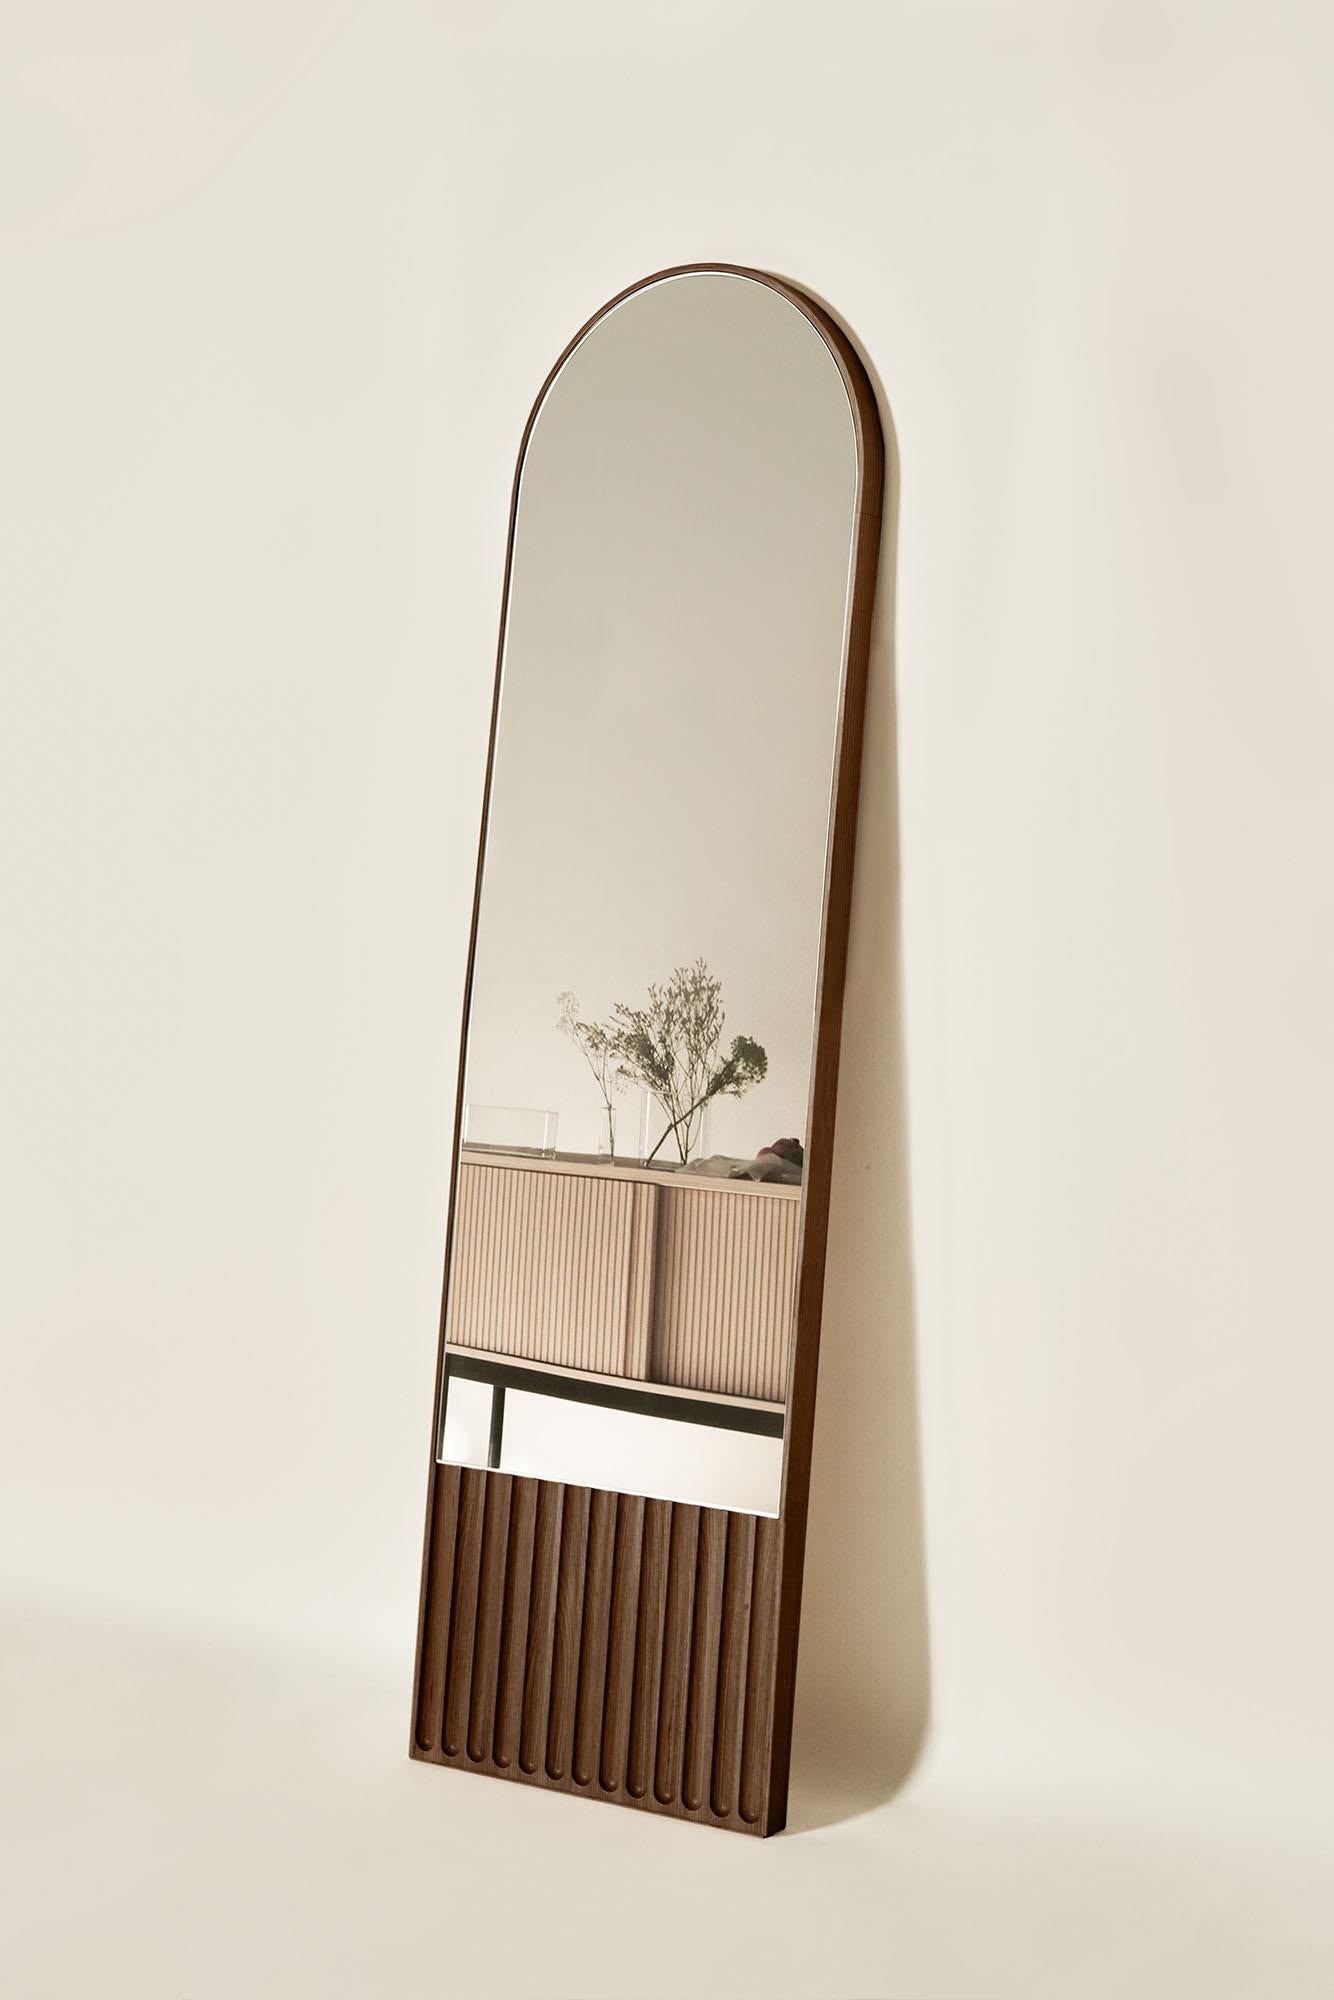 Die Tutto Sesto-Spiegel sind Teil der Kollektion 2023 zeitgenössischer Massivholzmöbel. Die aus dem Dialog zwischen Dale Italia und Cono Studio hervorgegangene Produktreihe zeichnet sich durch eine essentielle Ästhetik aus, die im Einklang mit den